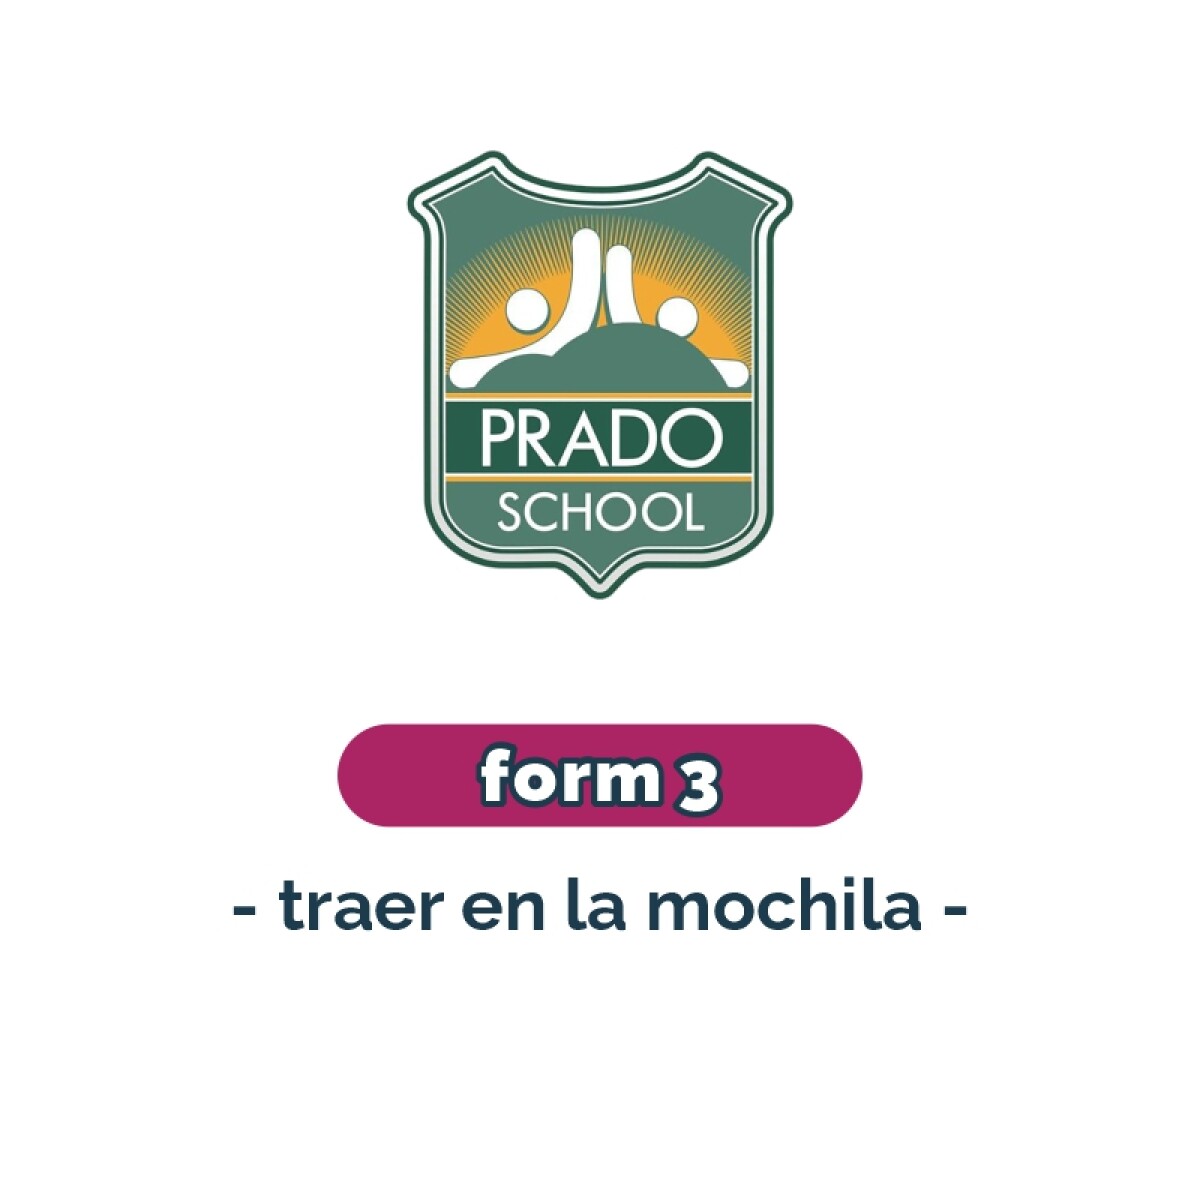 Lista de materiales - Primaria Form 3 Prado School 